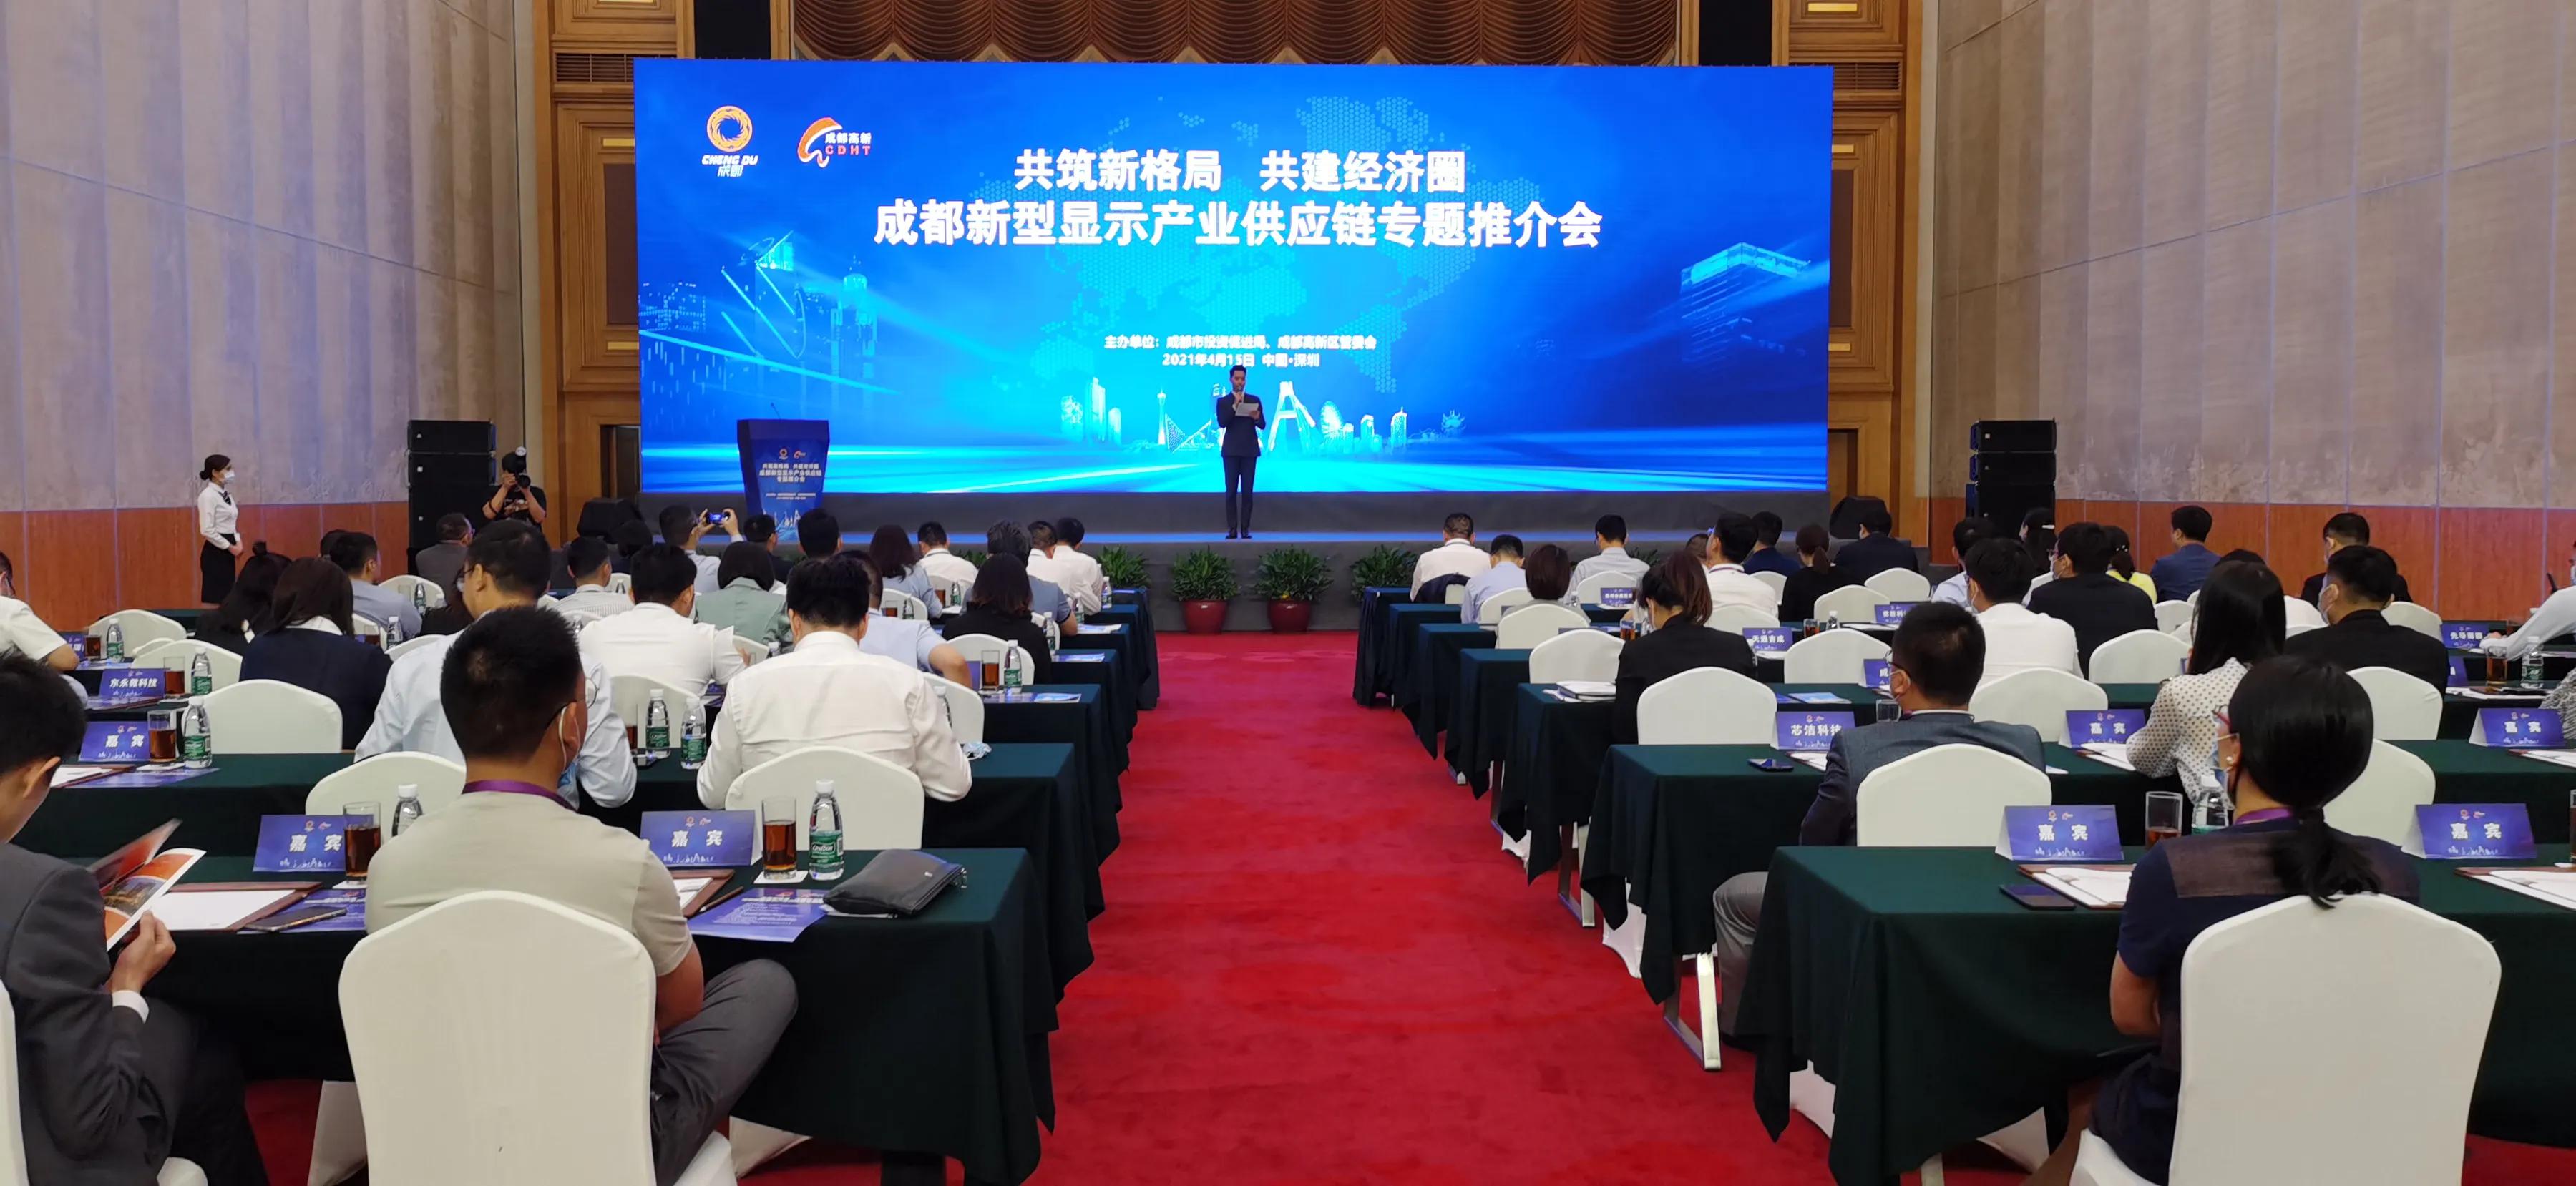 成都高新区深圳招商 加速打造国际一流新型显示产业高地